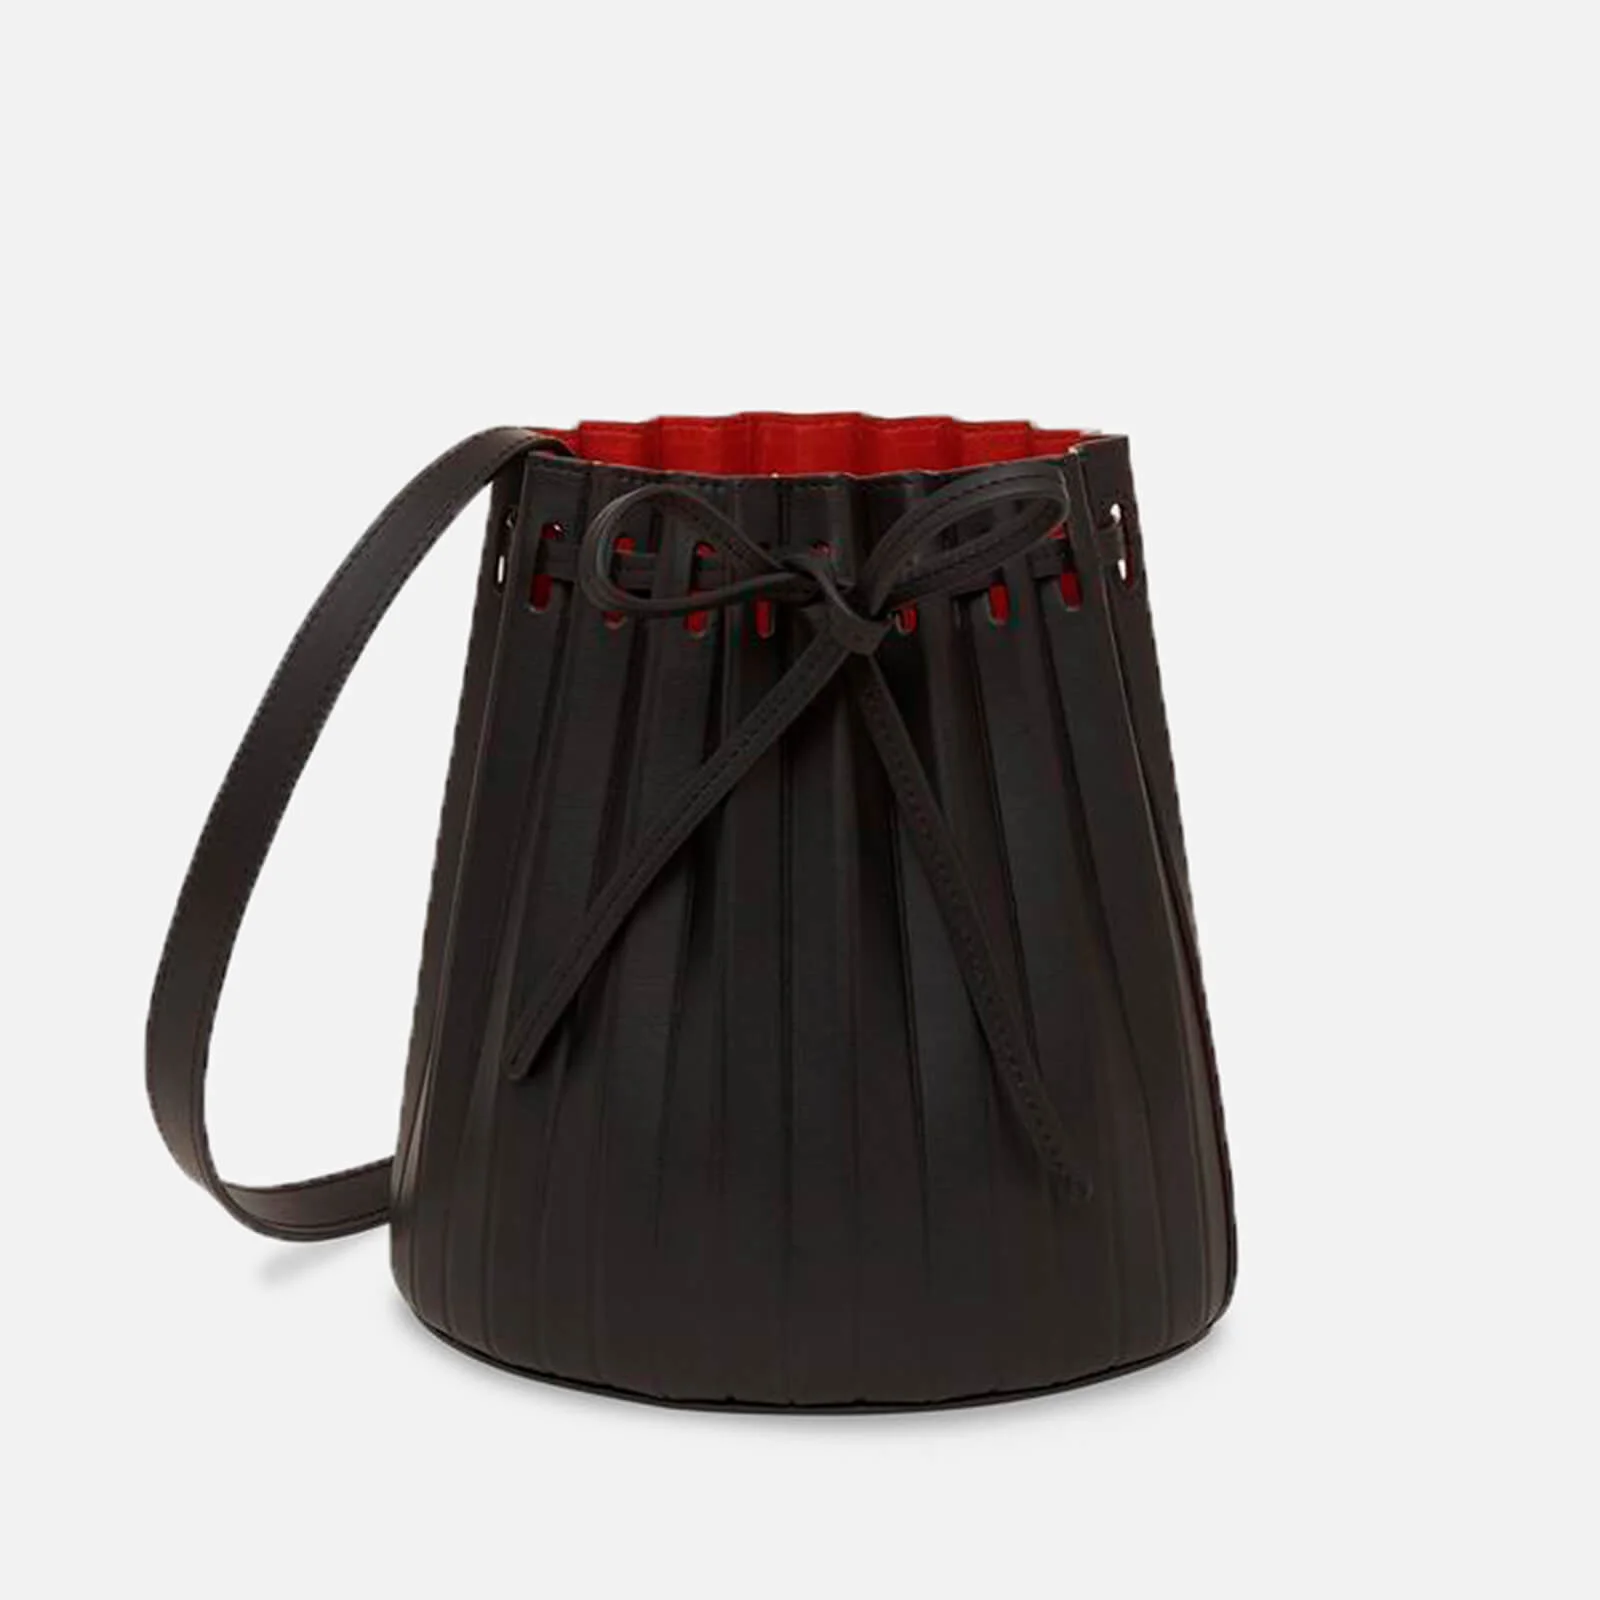 Mansur Gavriel Women's Mini Pleated Bucket Bag - Black/Flamma Image 1